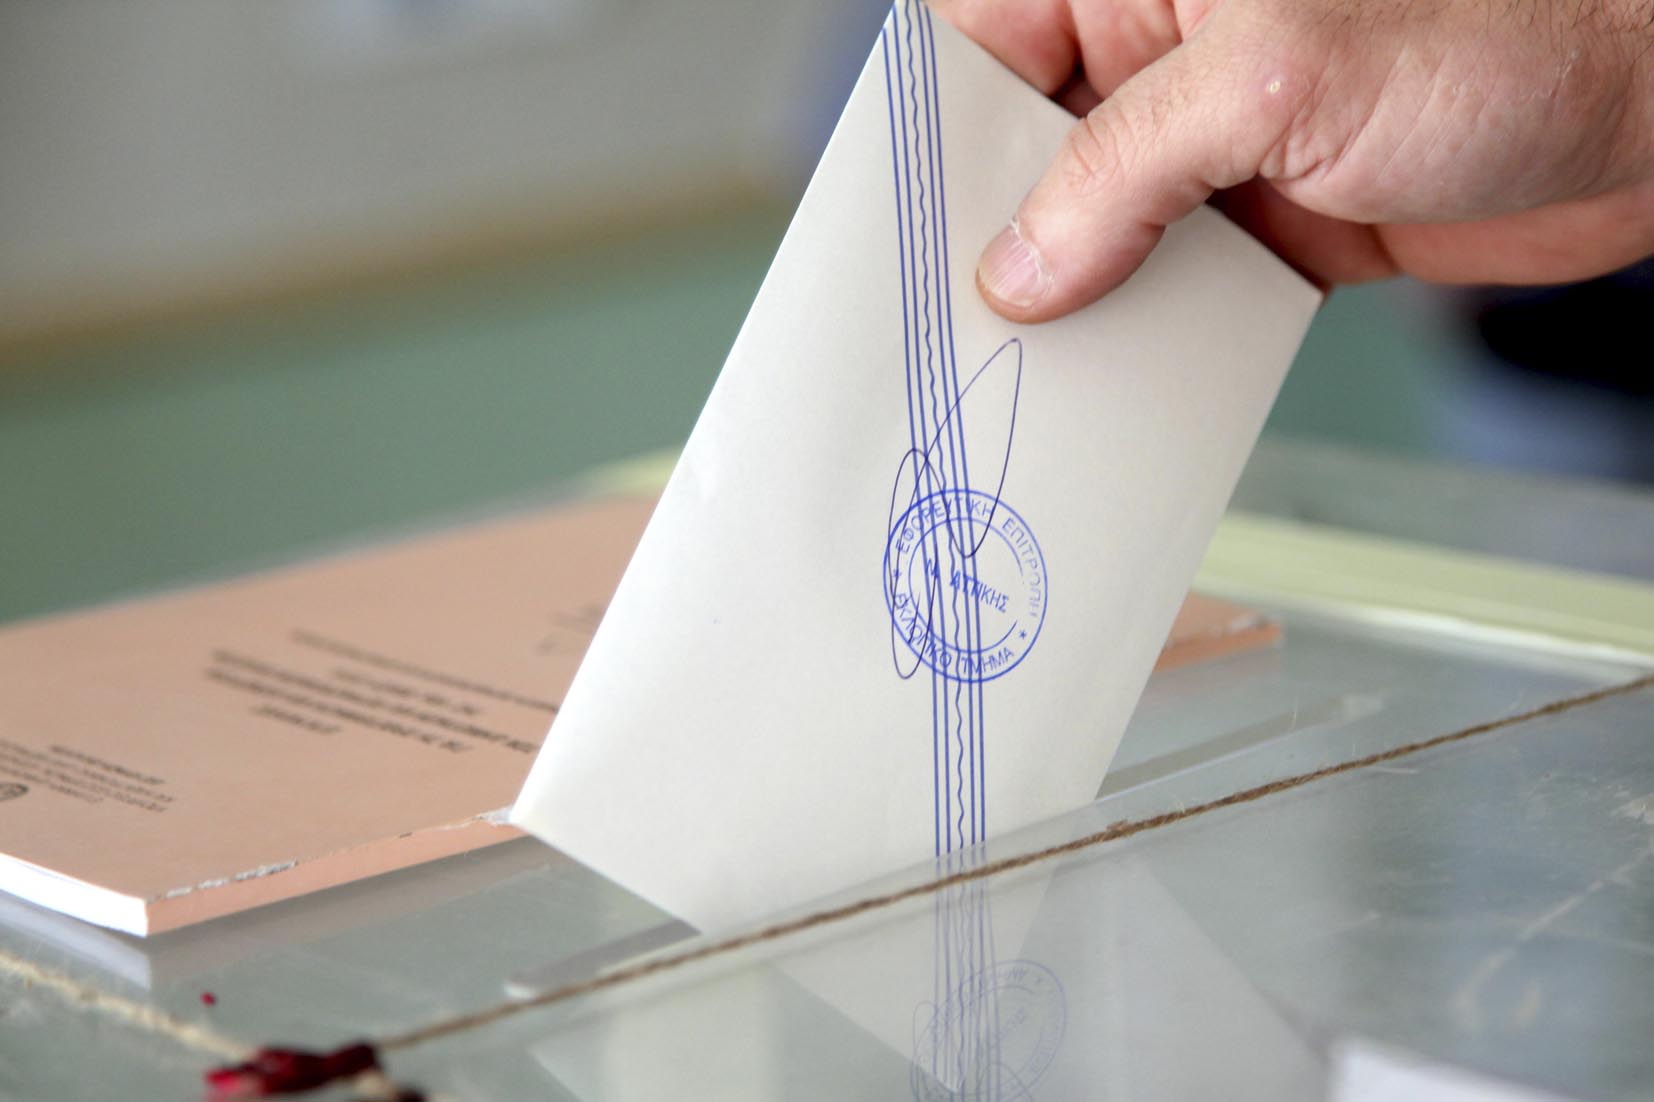 Ευρωεκλογές: Ένας στους δύο ενδιαφέρονται «λίγο ή καθόλου», σύμφωνα με νέα δημοσκόπηση